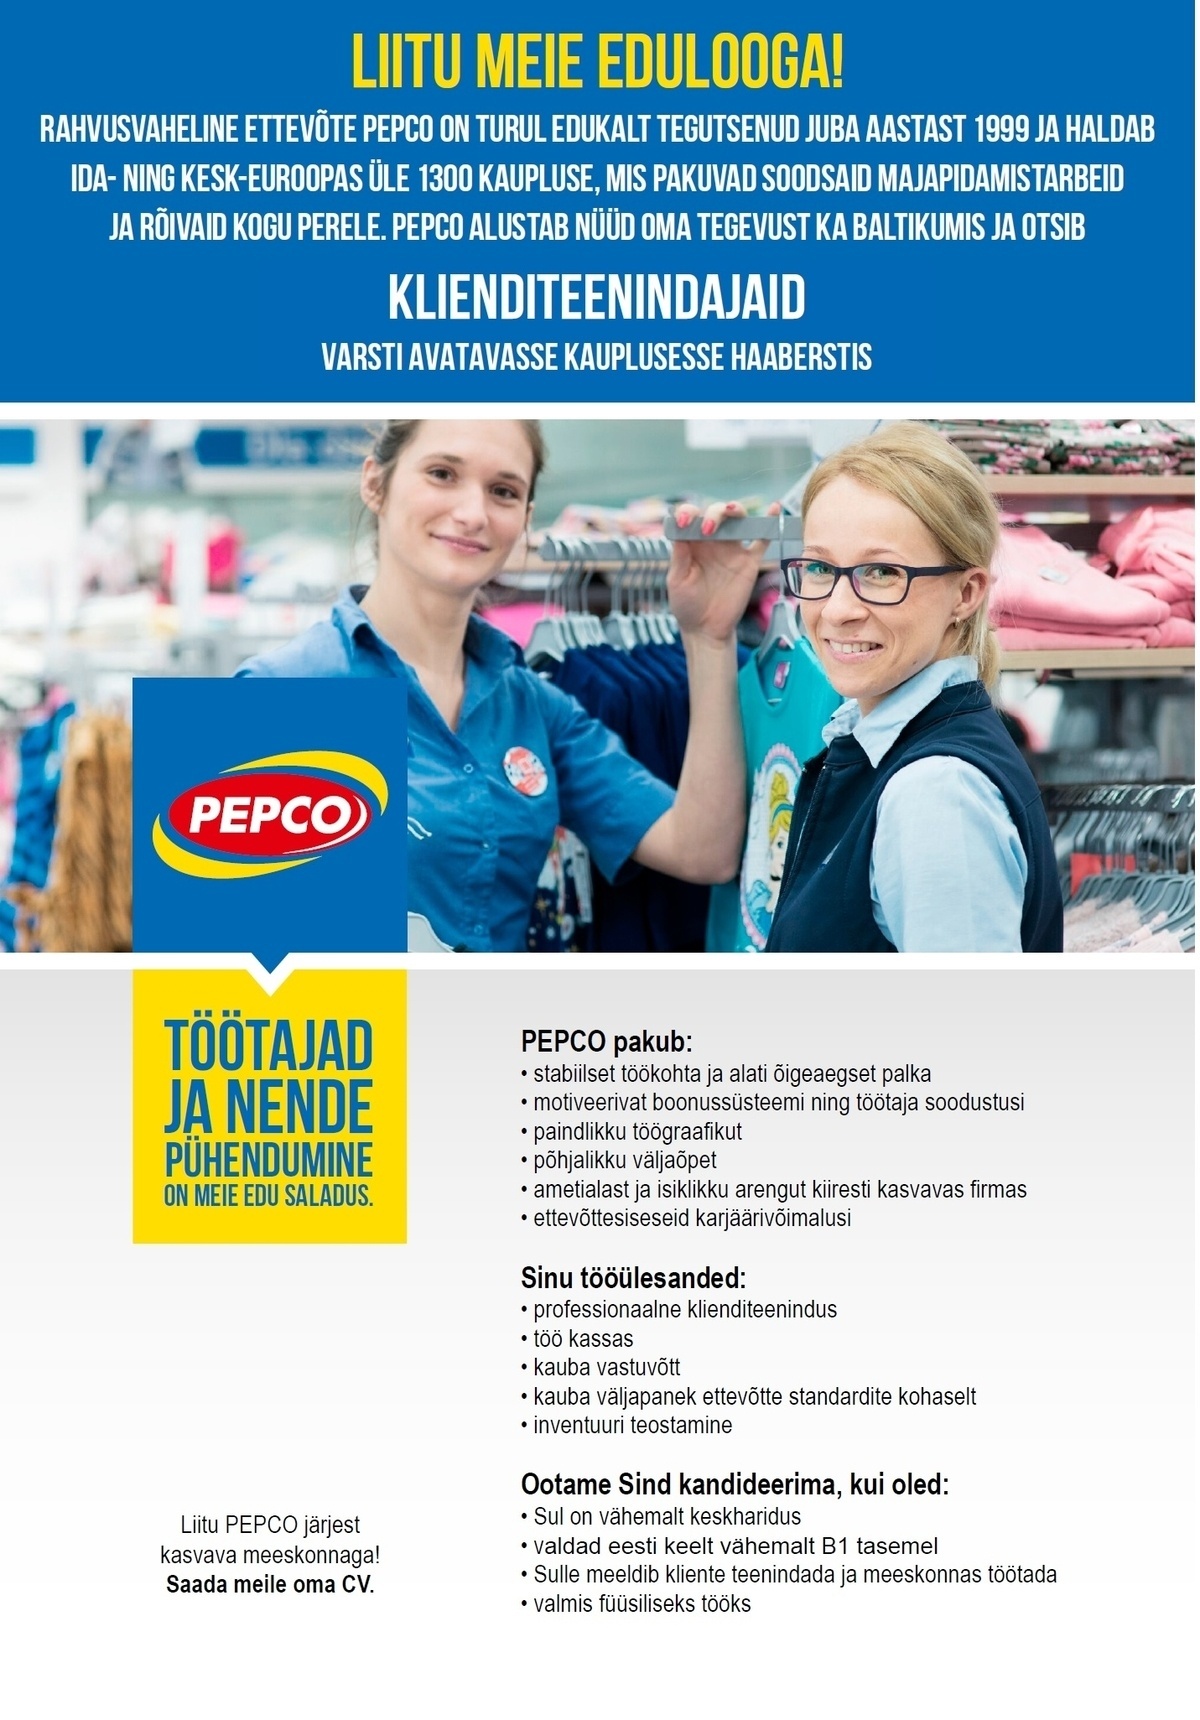 Pepco Estonia OÜ Klienditeenindajad PEPCO varsti avatavasse kauplusesse Haaberstis